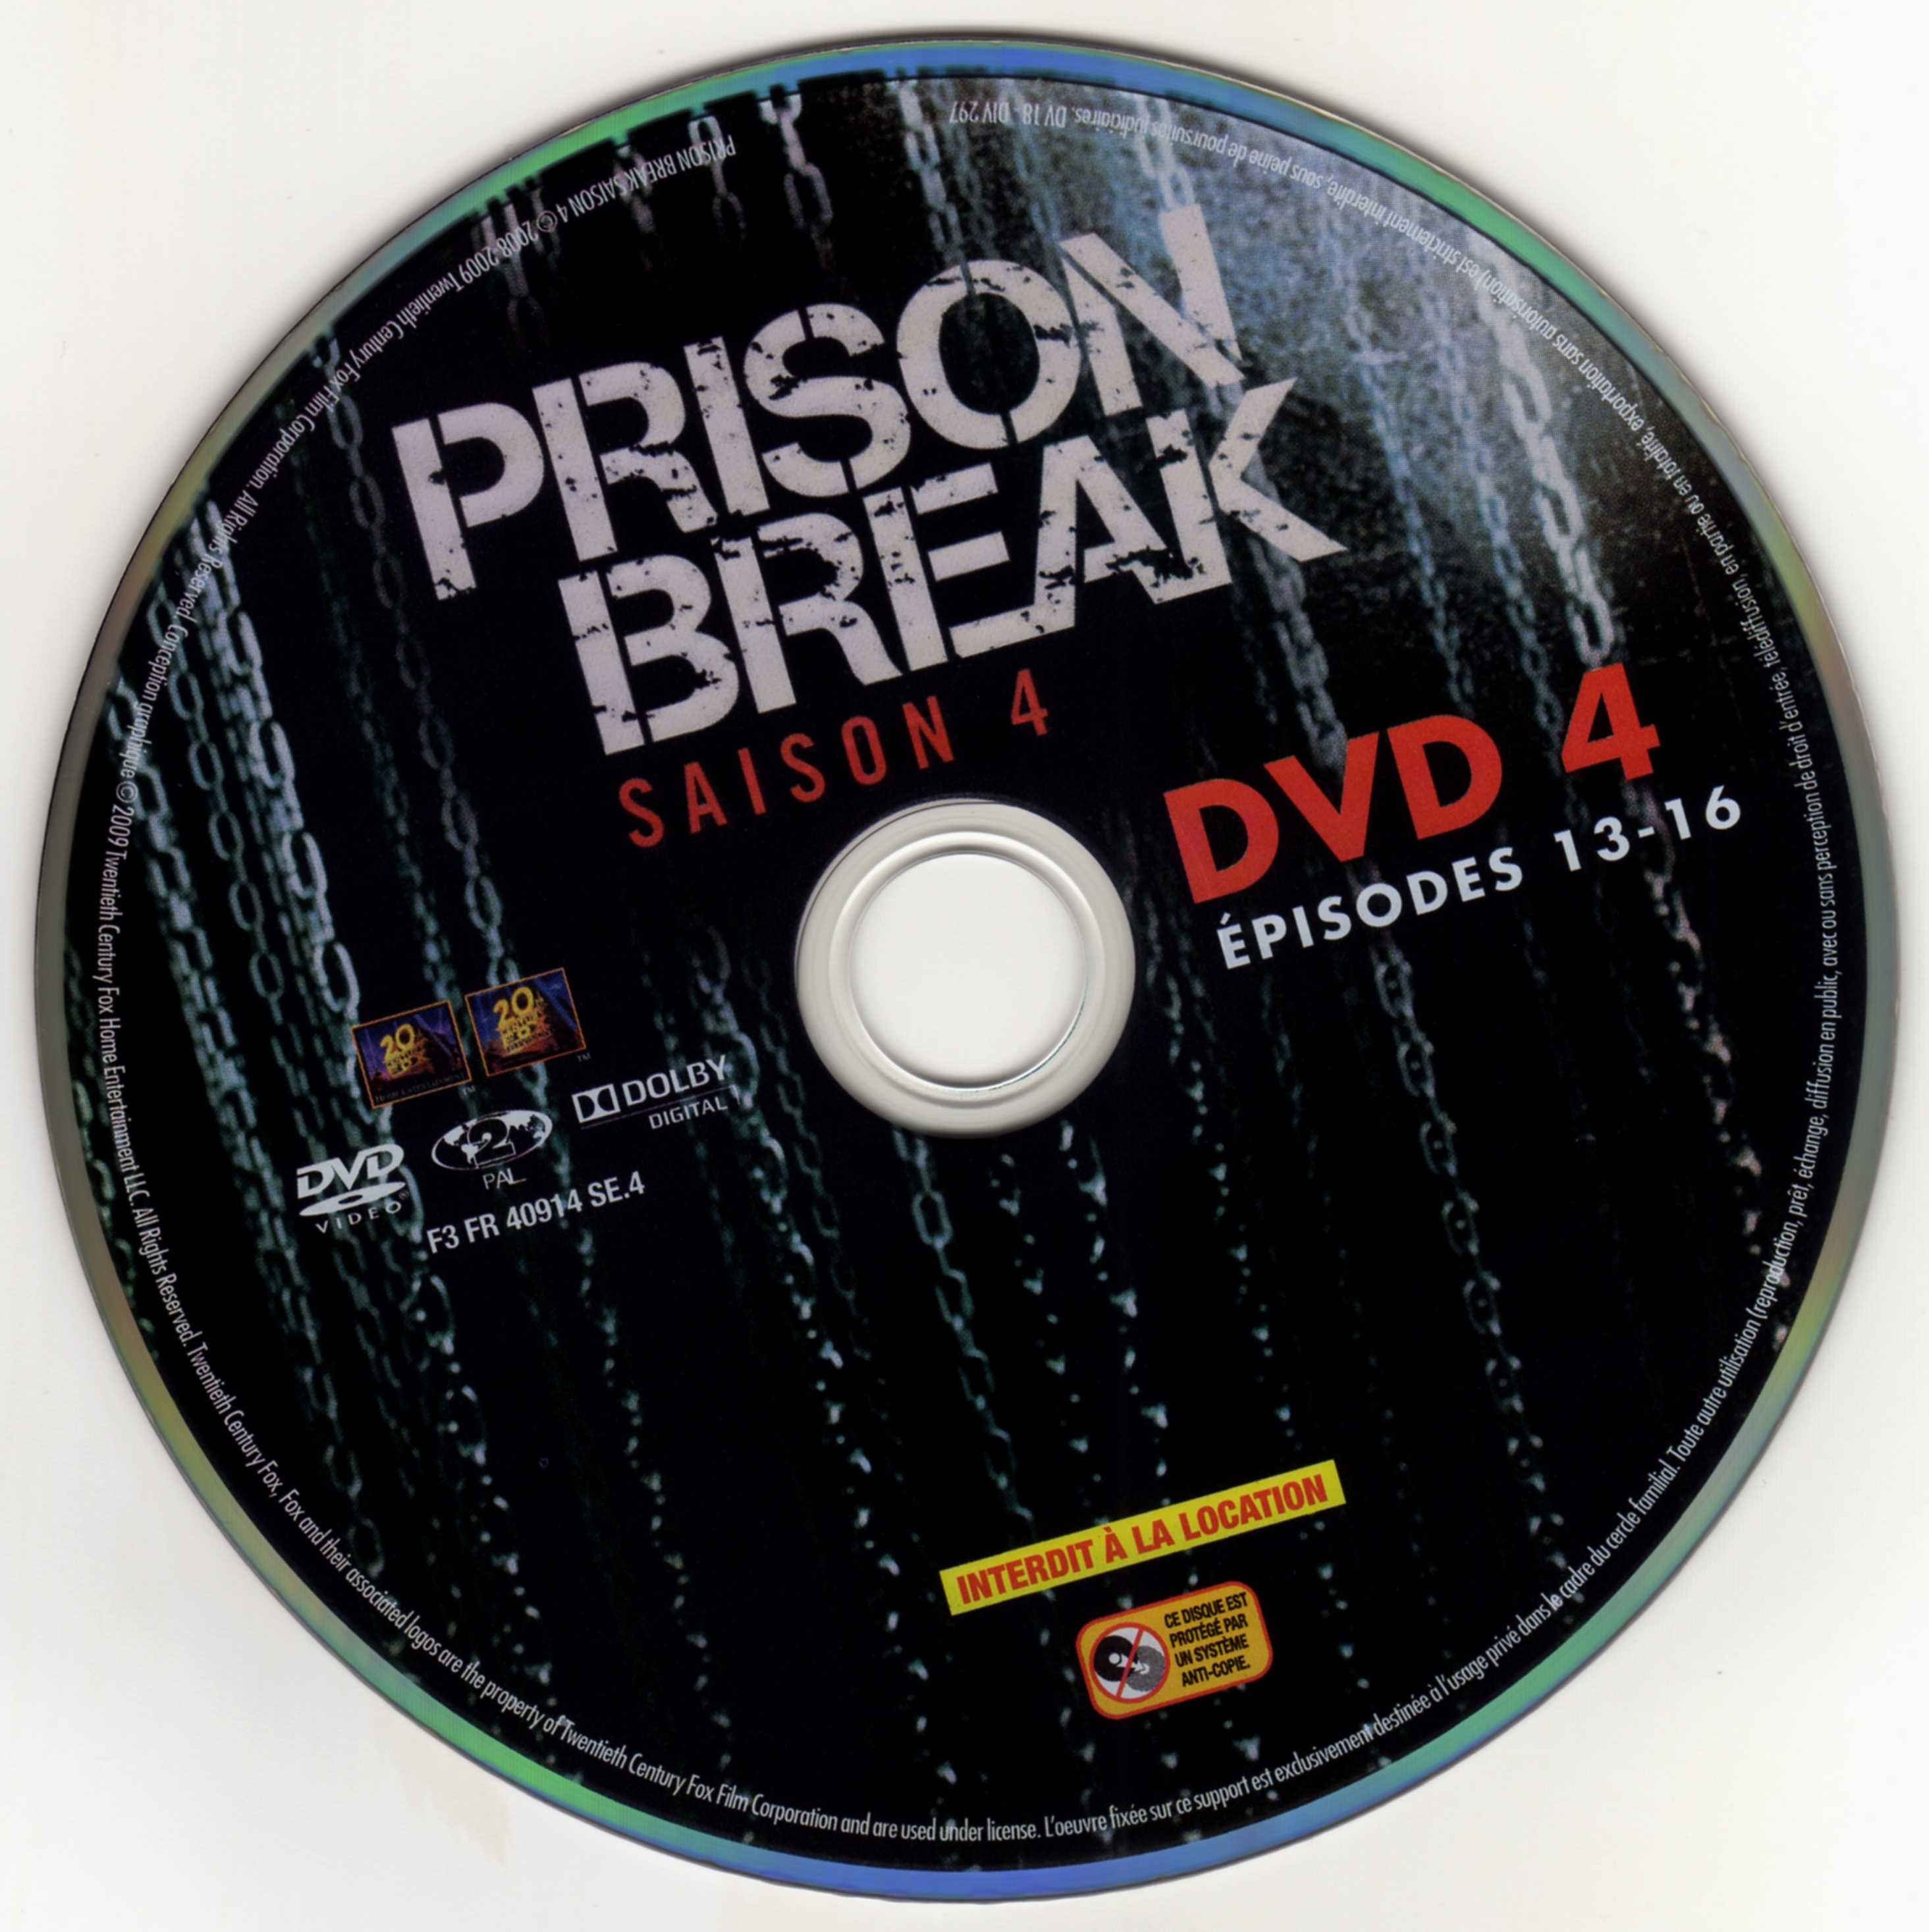 Prison break saison 4 DVD 4